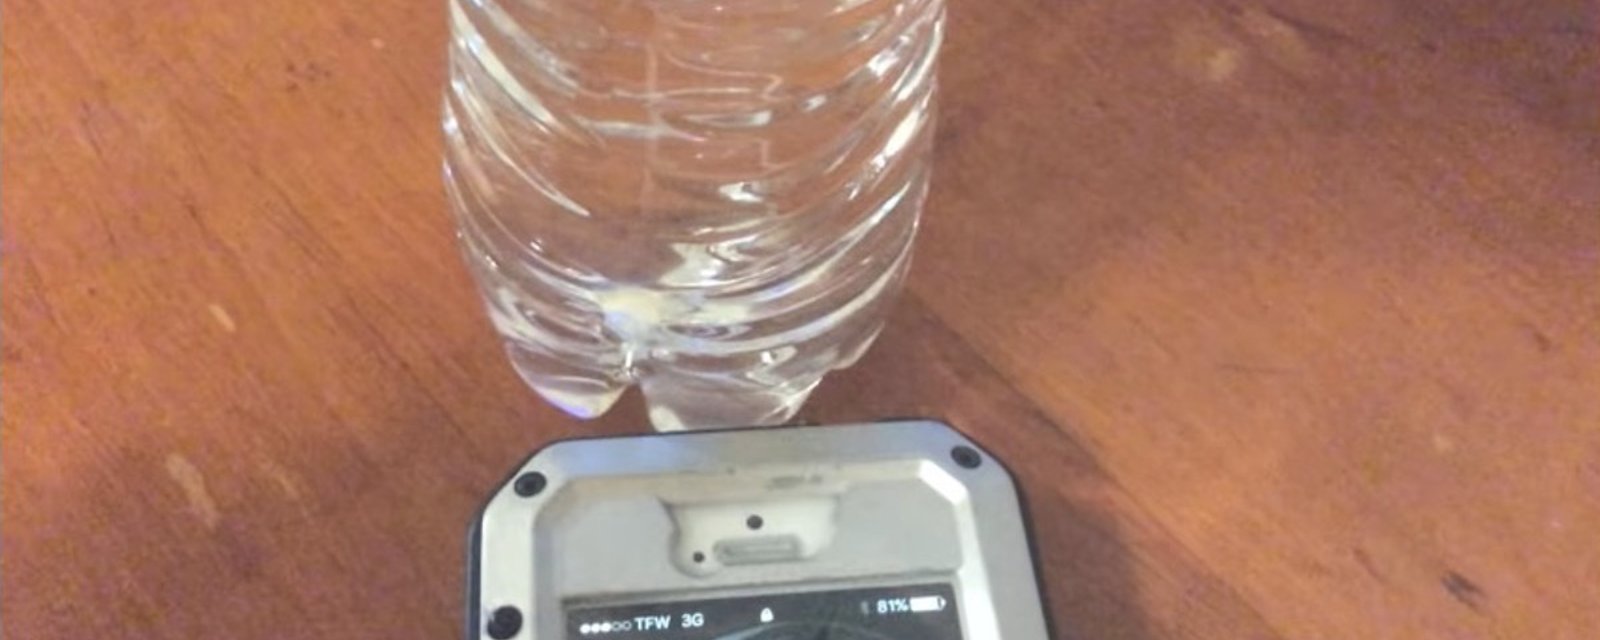 Qu'arrive-t-il lorsque vous placez une bouteille d'eau près de votre téléphone cellulaire?